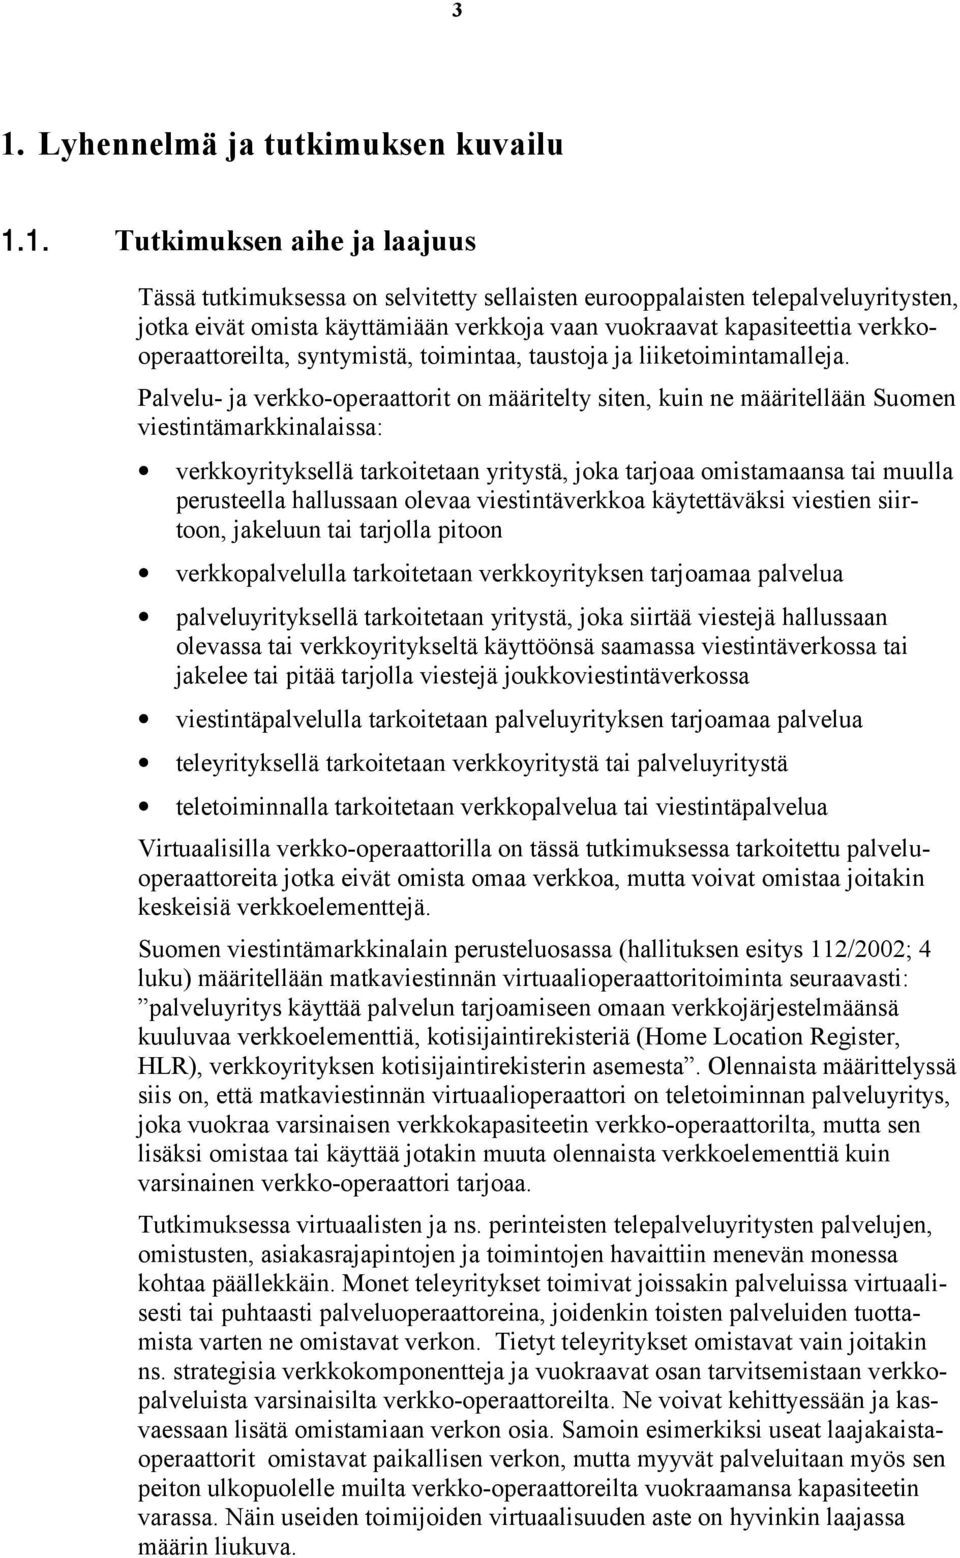 Palvelu- ja verkko-operaattorit on määritelty siten, kuin ne määritellään Suomen viestintämarkkinalaissa: verkkoyrityksellä tarkoitetaan yritystä, joka tarjoaa omistamaansa tai muulla perusteella